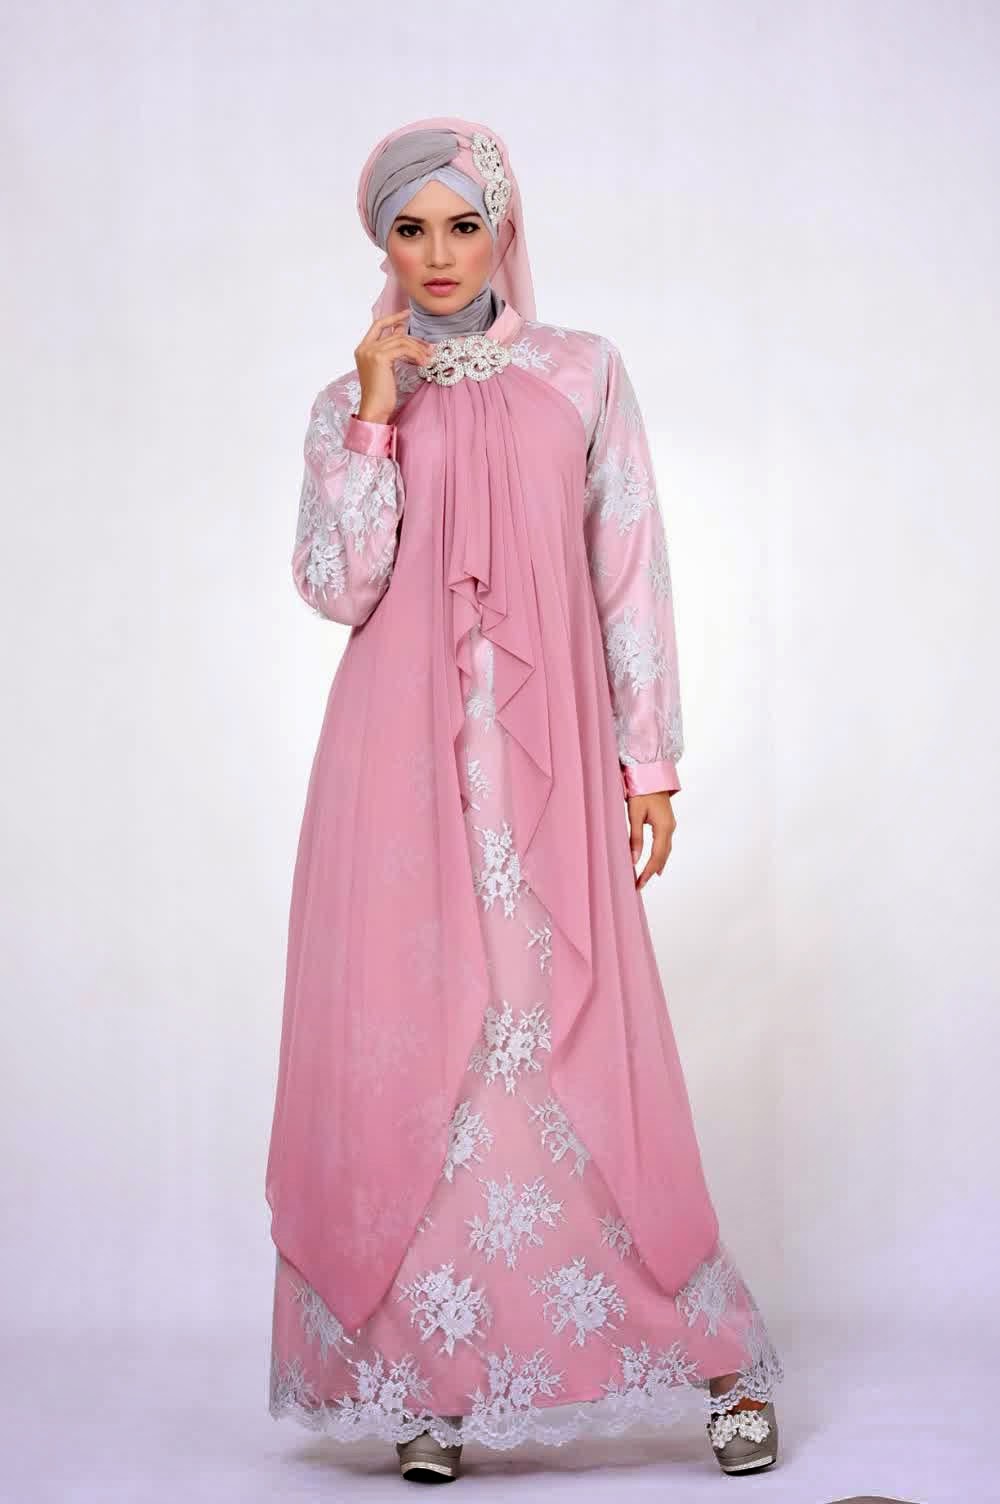 20+ Contoh Baju Gamis Muslim Brokat Terbaru 2018